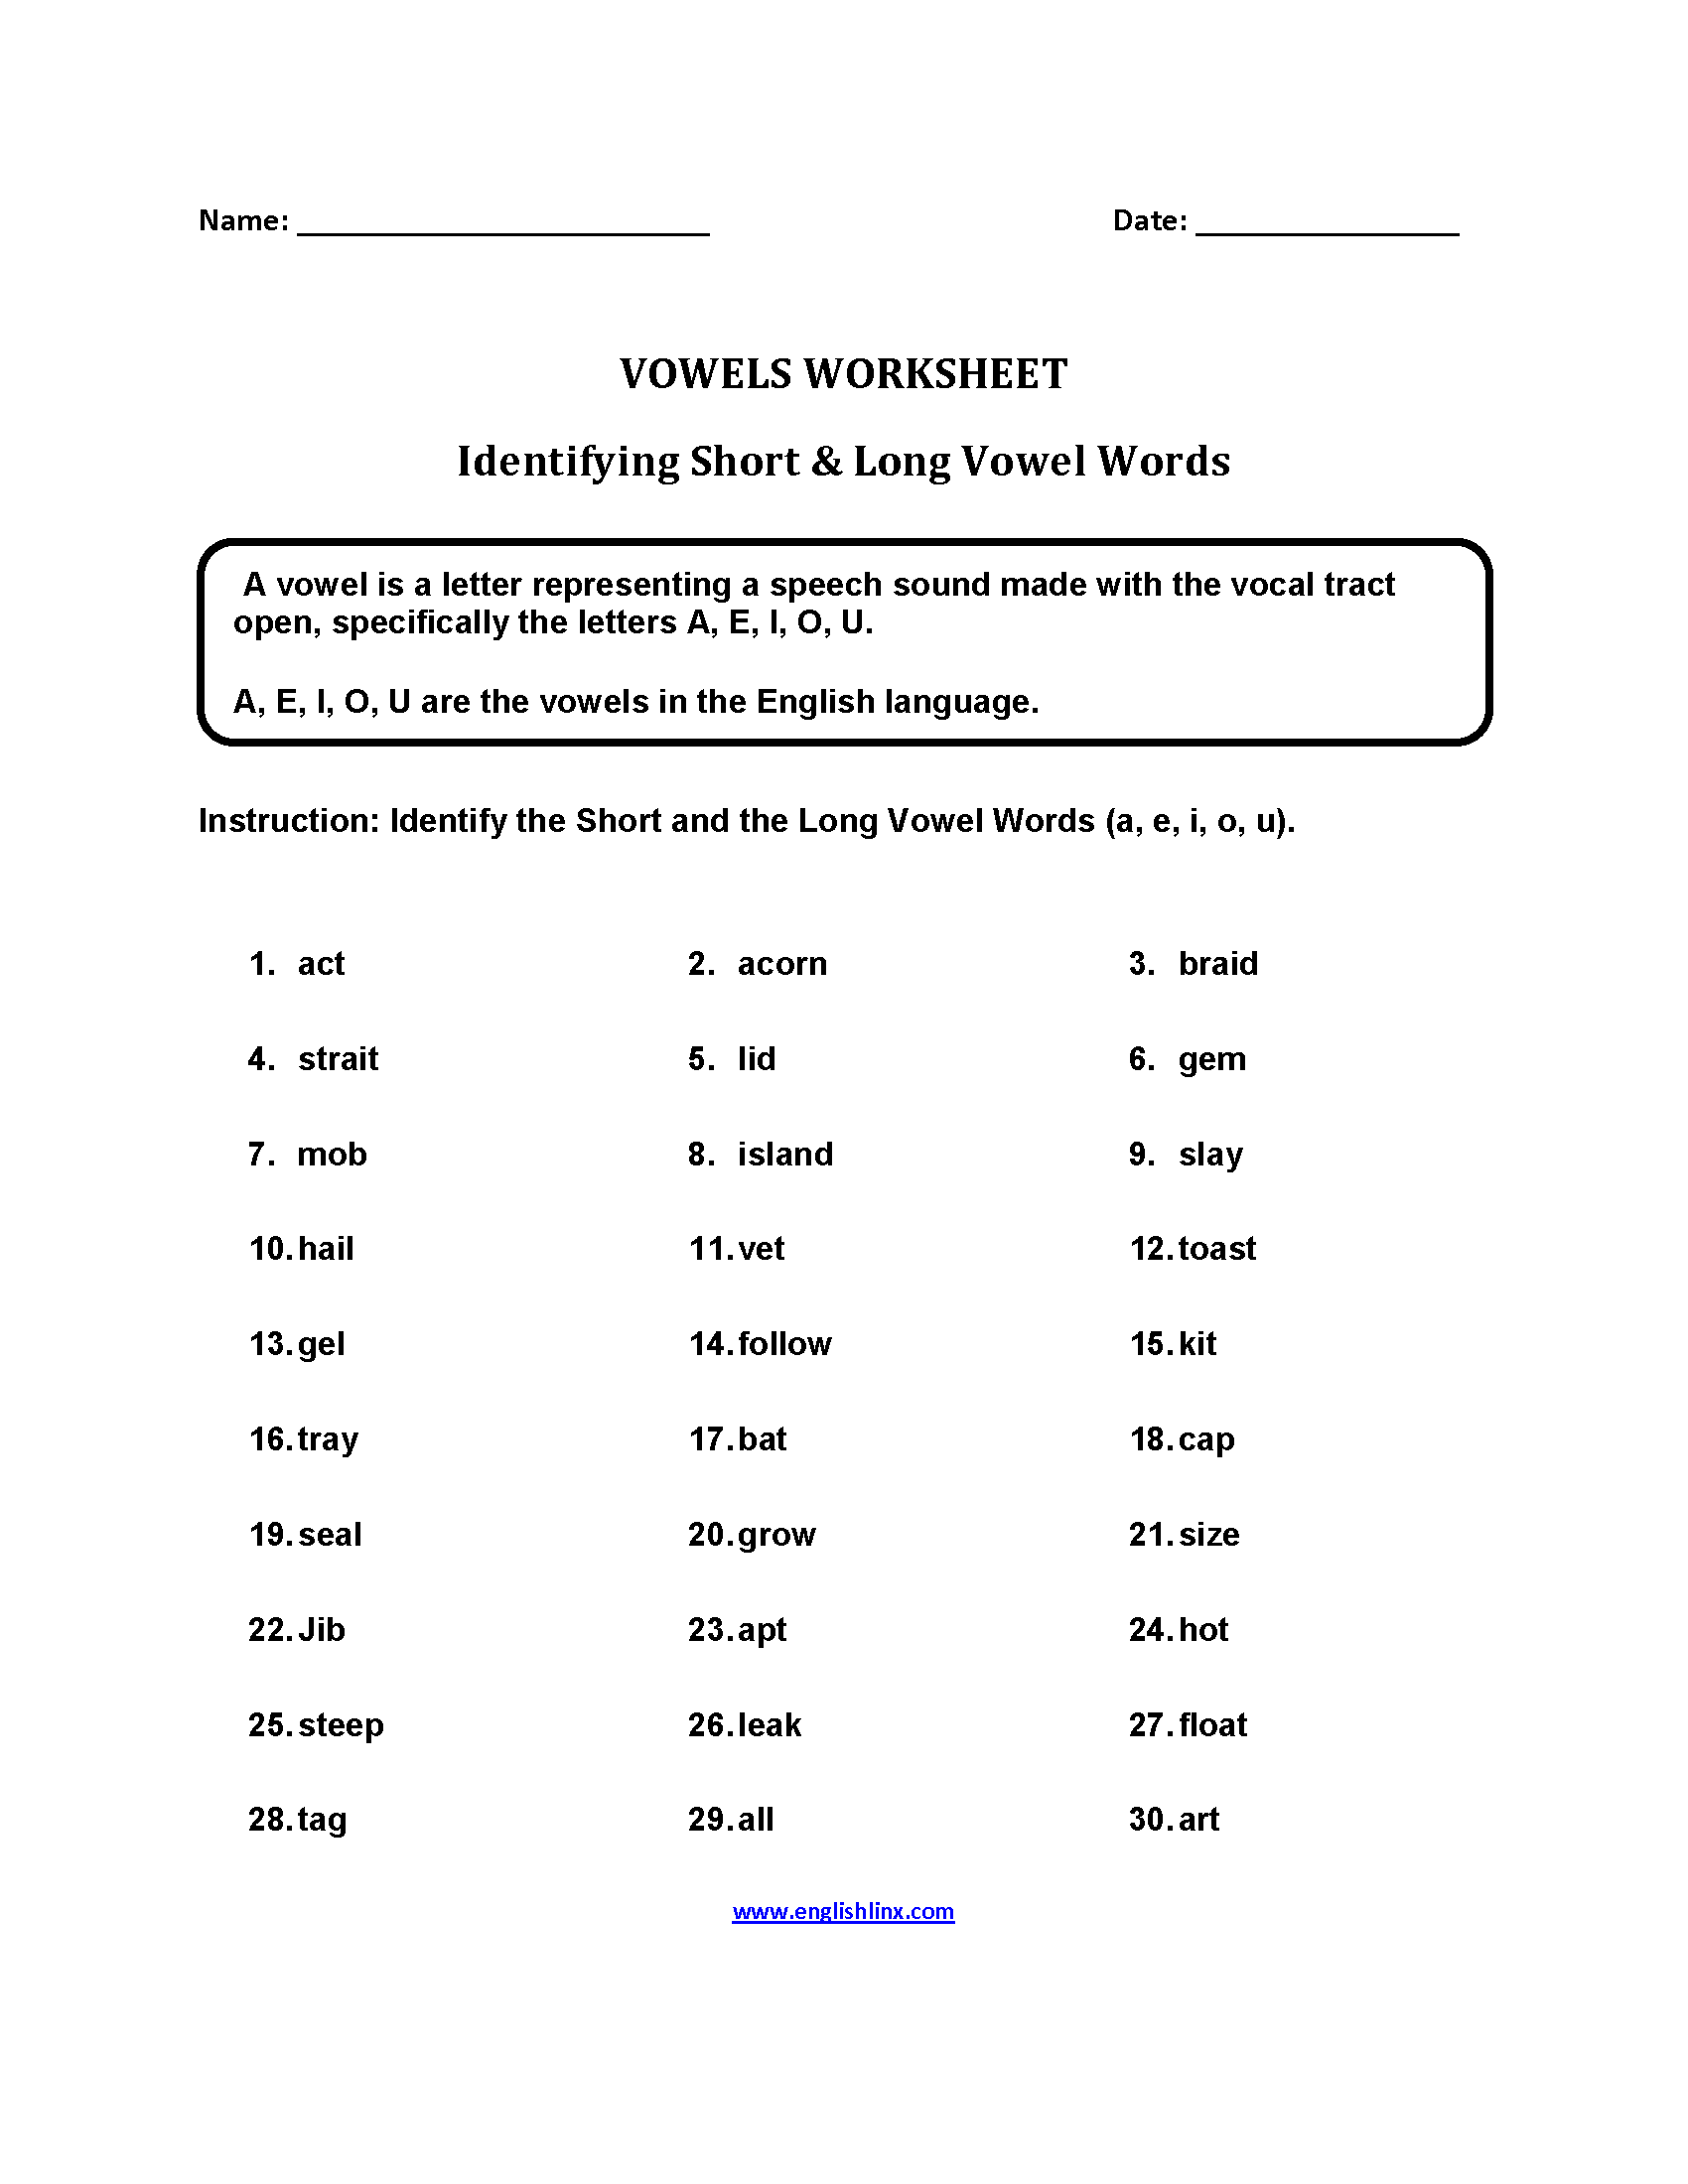 Vowels Worksheets | Short and Long Vowel Words Worksheets